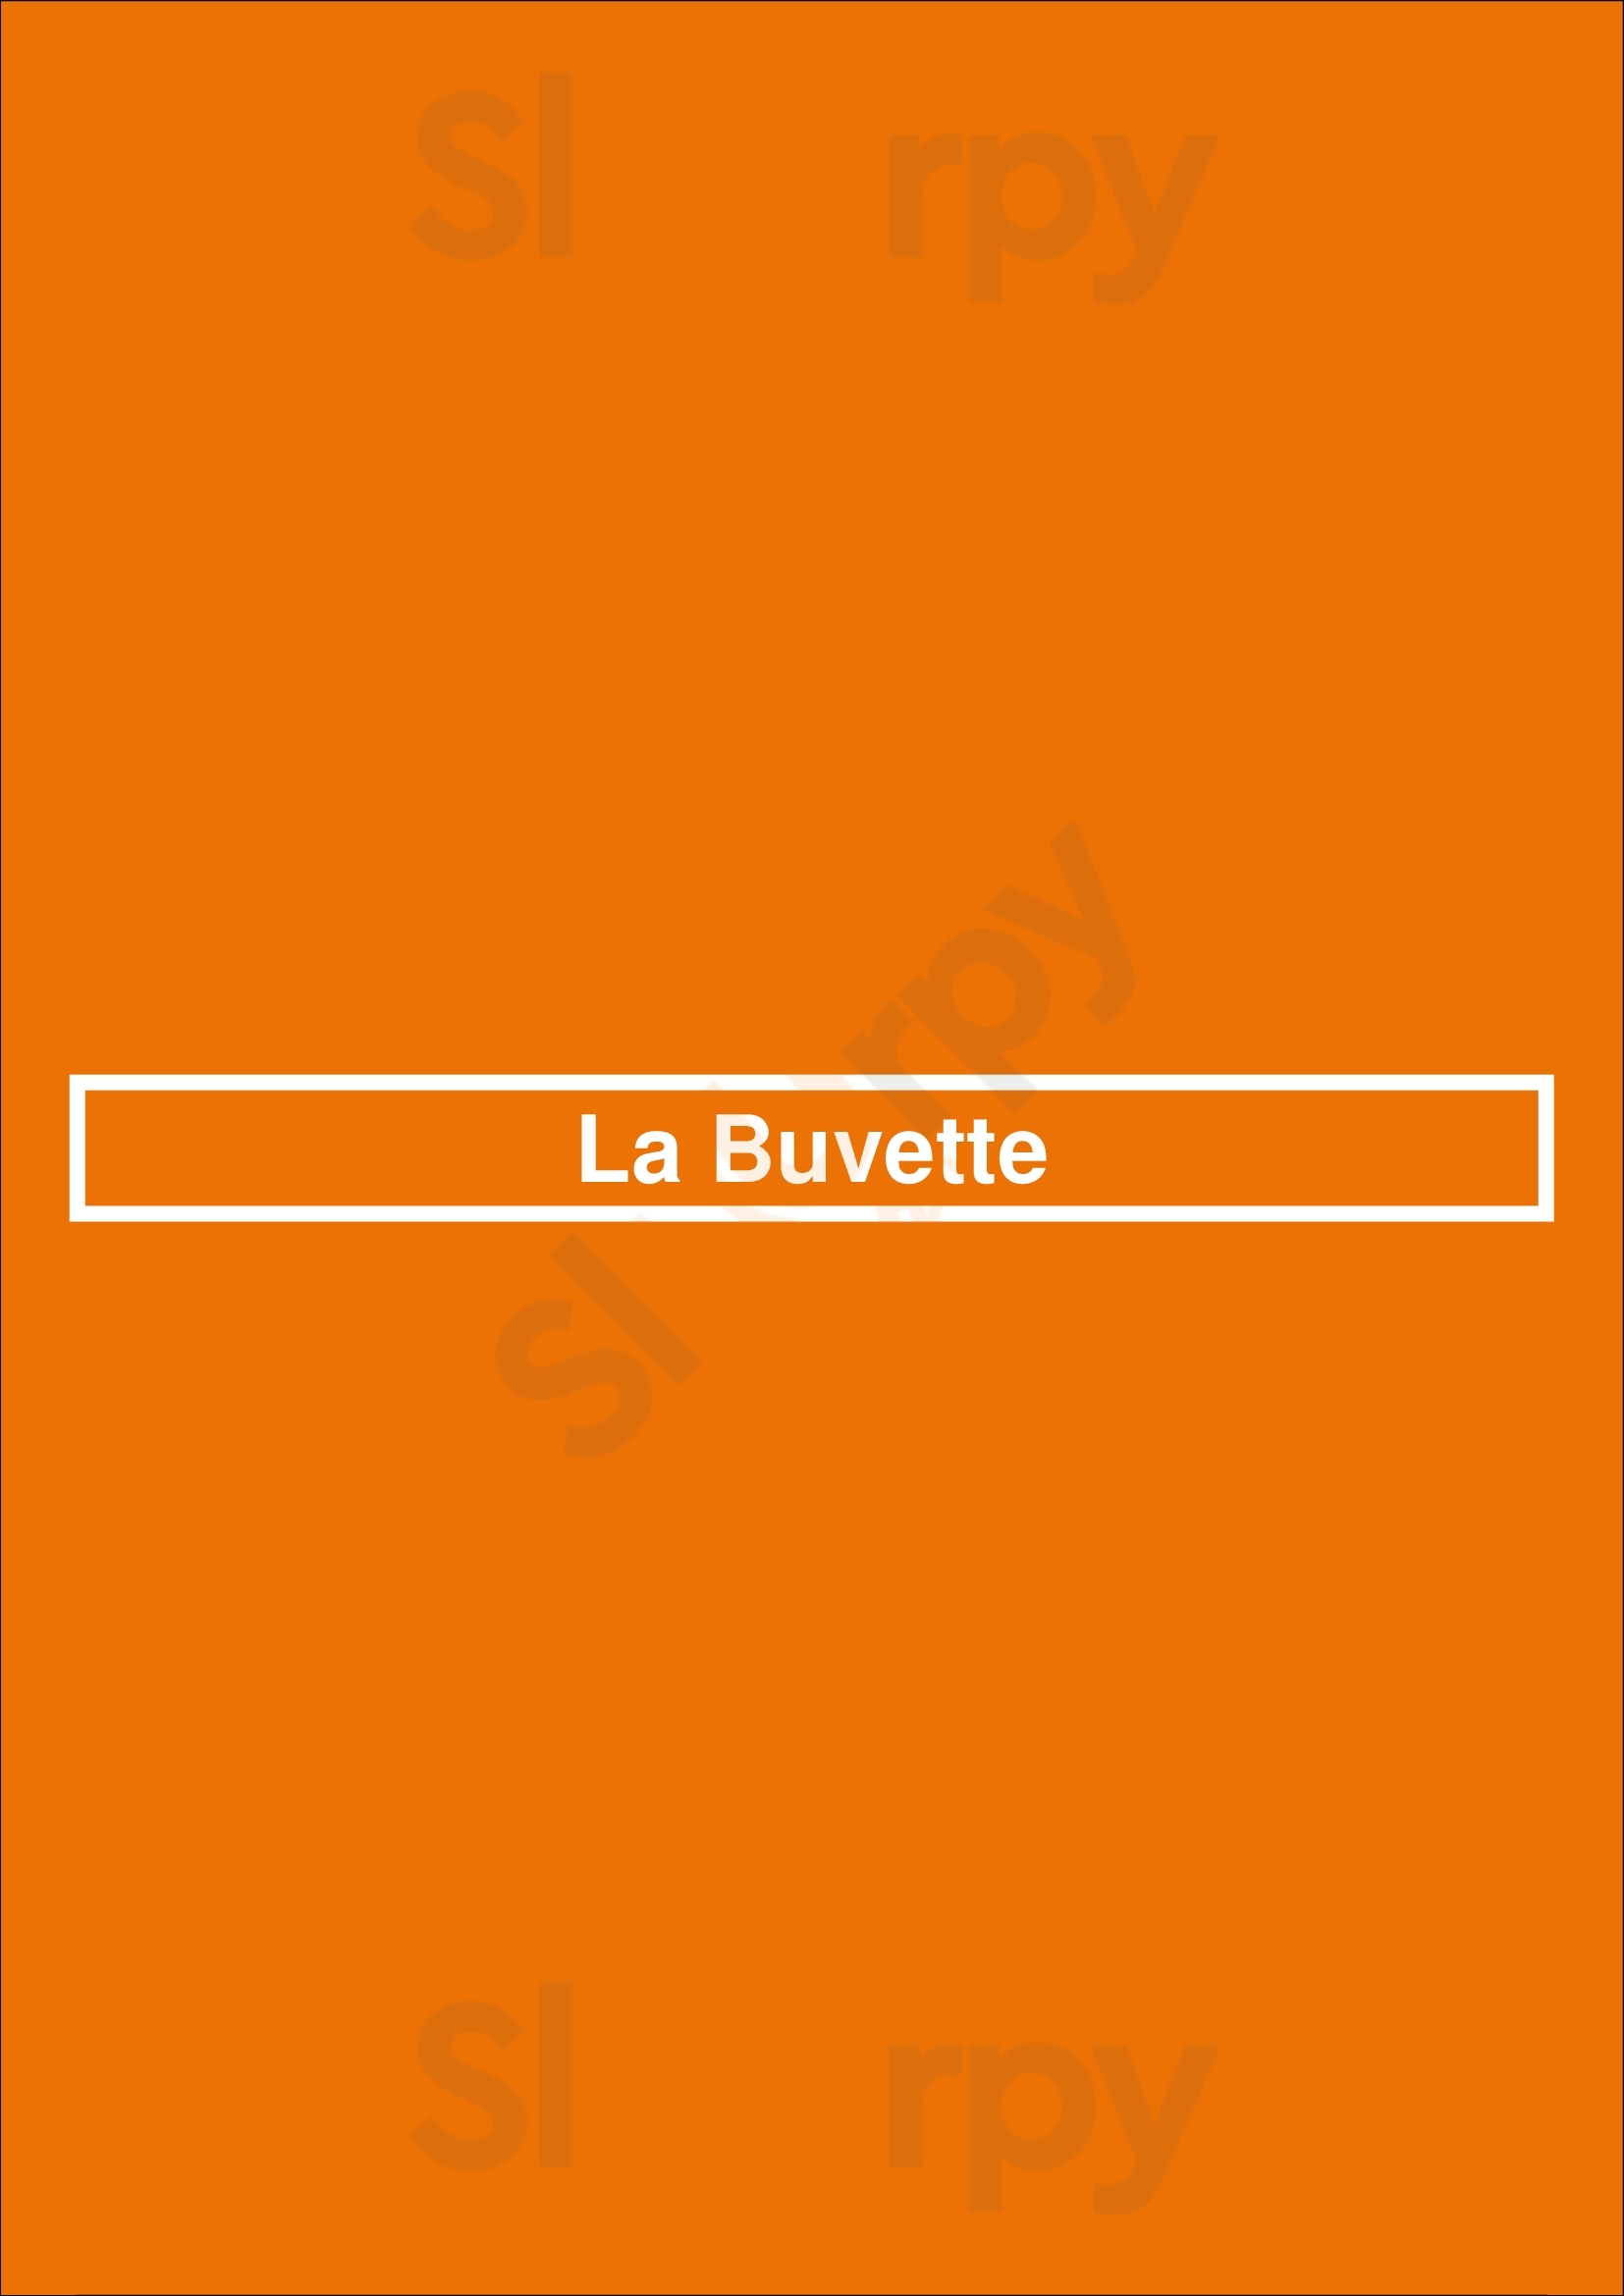 La Buvette Bruxelles Menu - 1